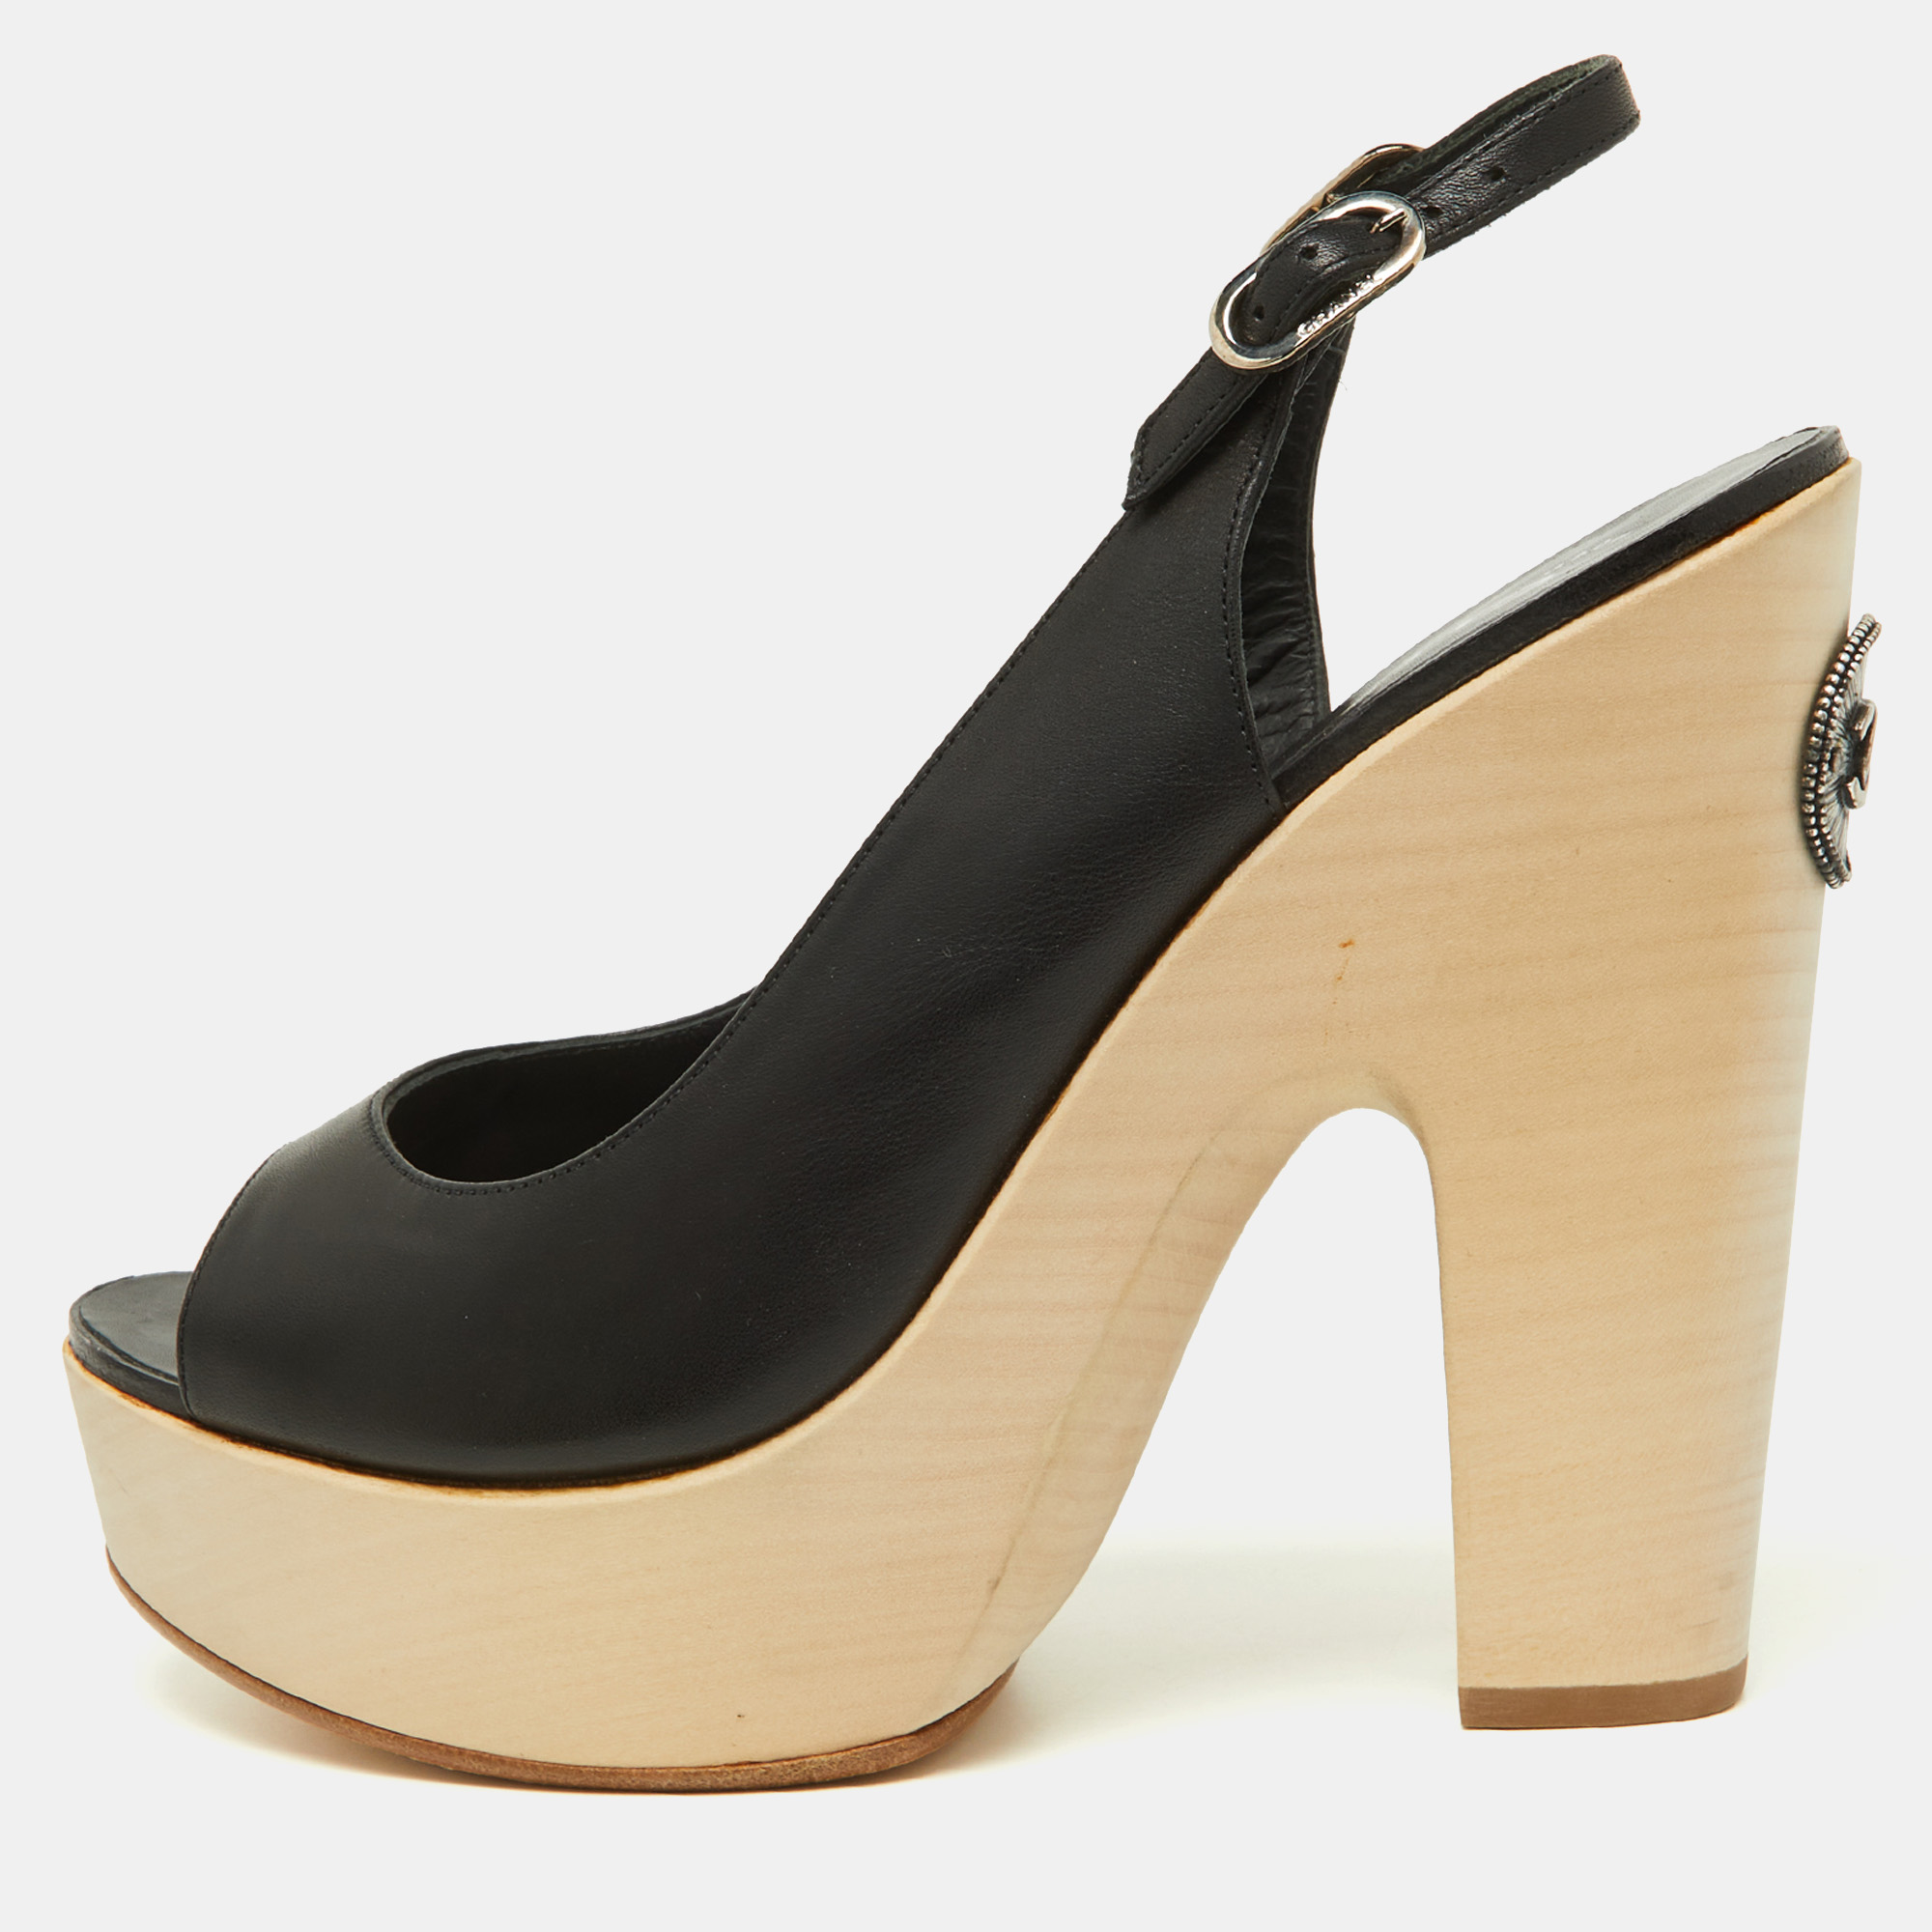 Pre-owned Chanel Black Leather Wooden Block Heel Slingback Platform Pumps Size 39